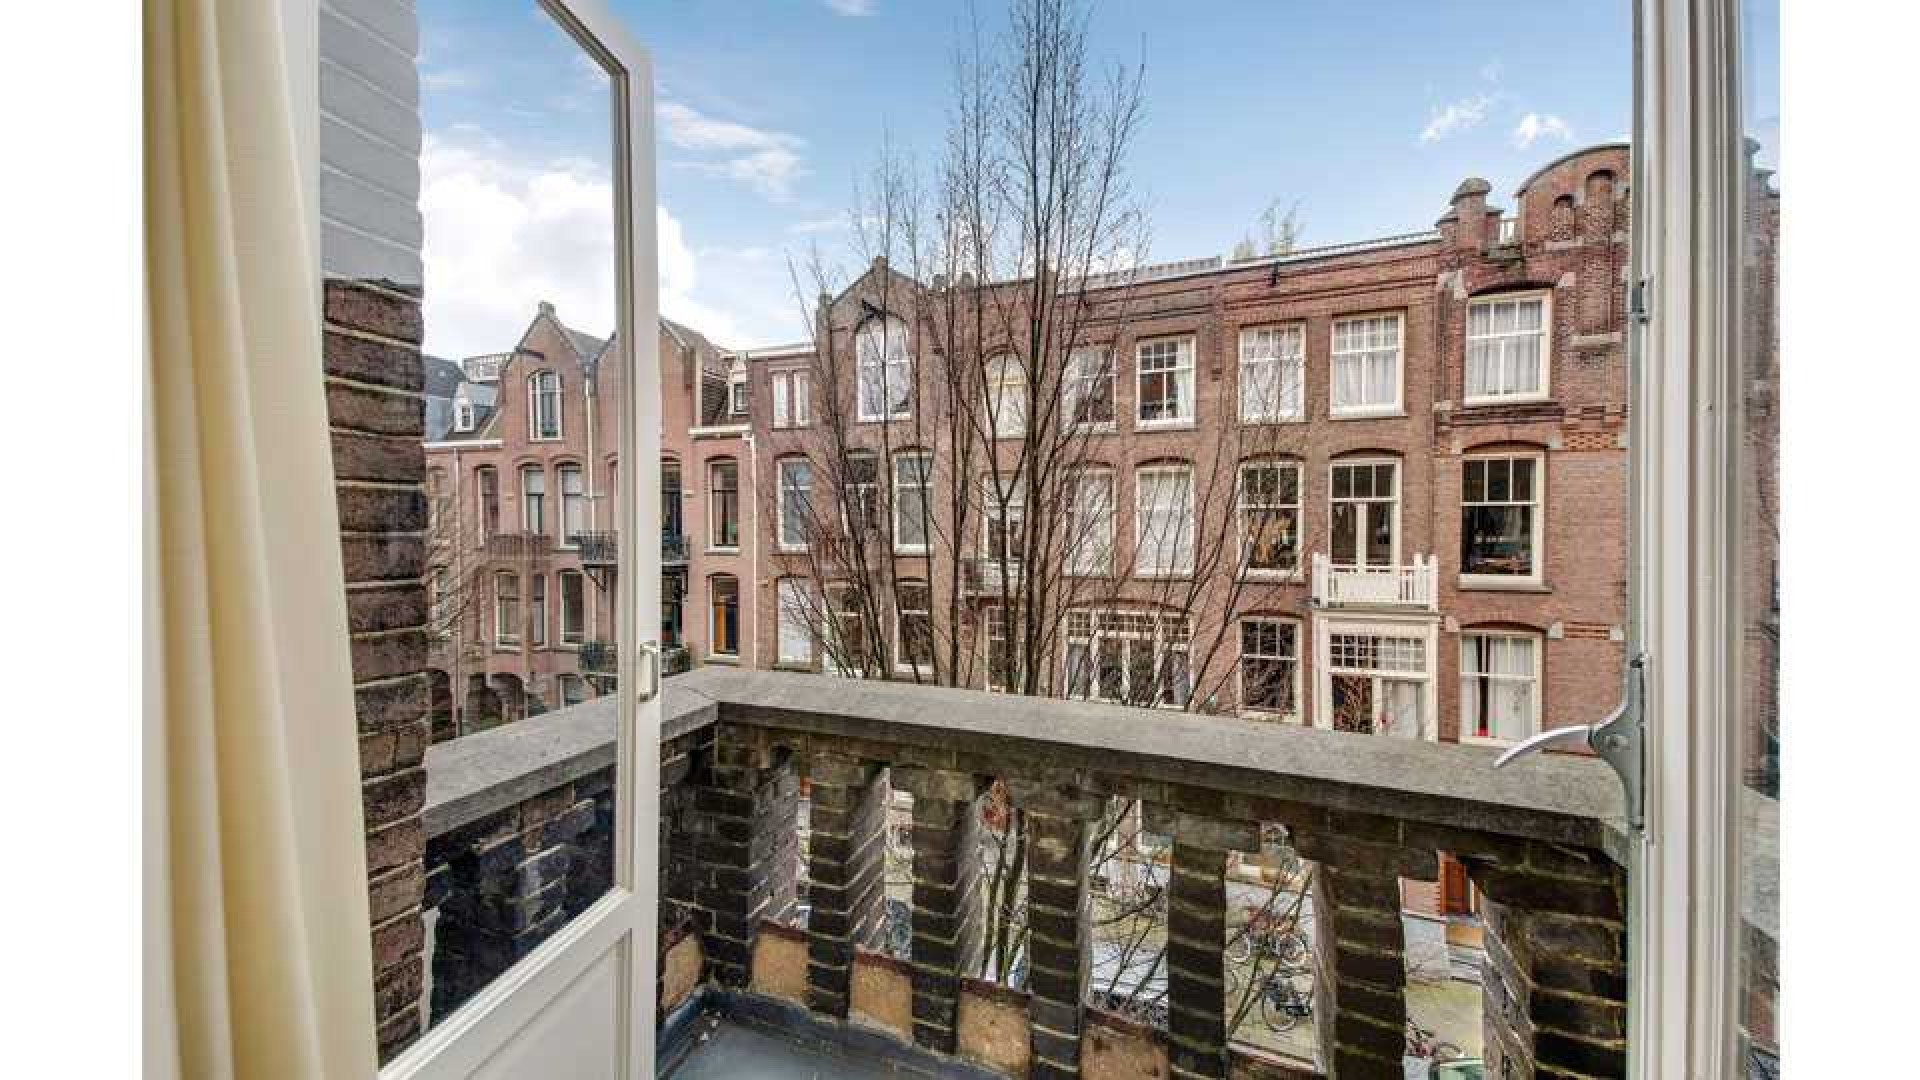 Mode koningin Sheila de Vries verkoopt haar driedubbele bovenhuis in Amsterdam Zuid met vette winst. Zie foto's